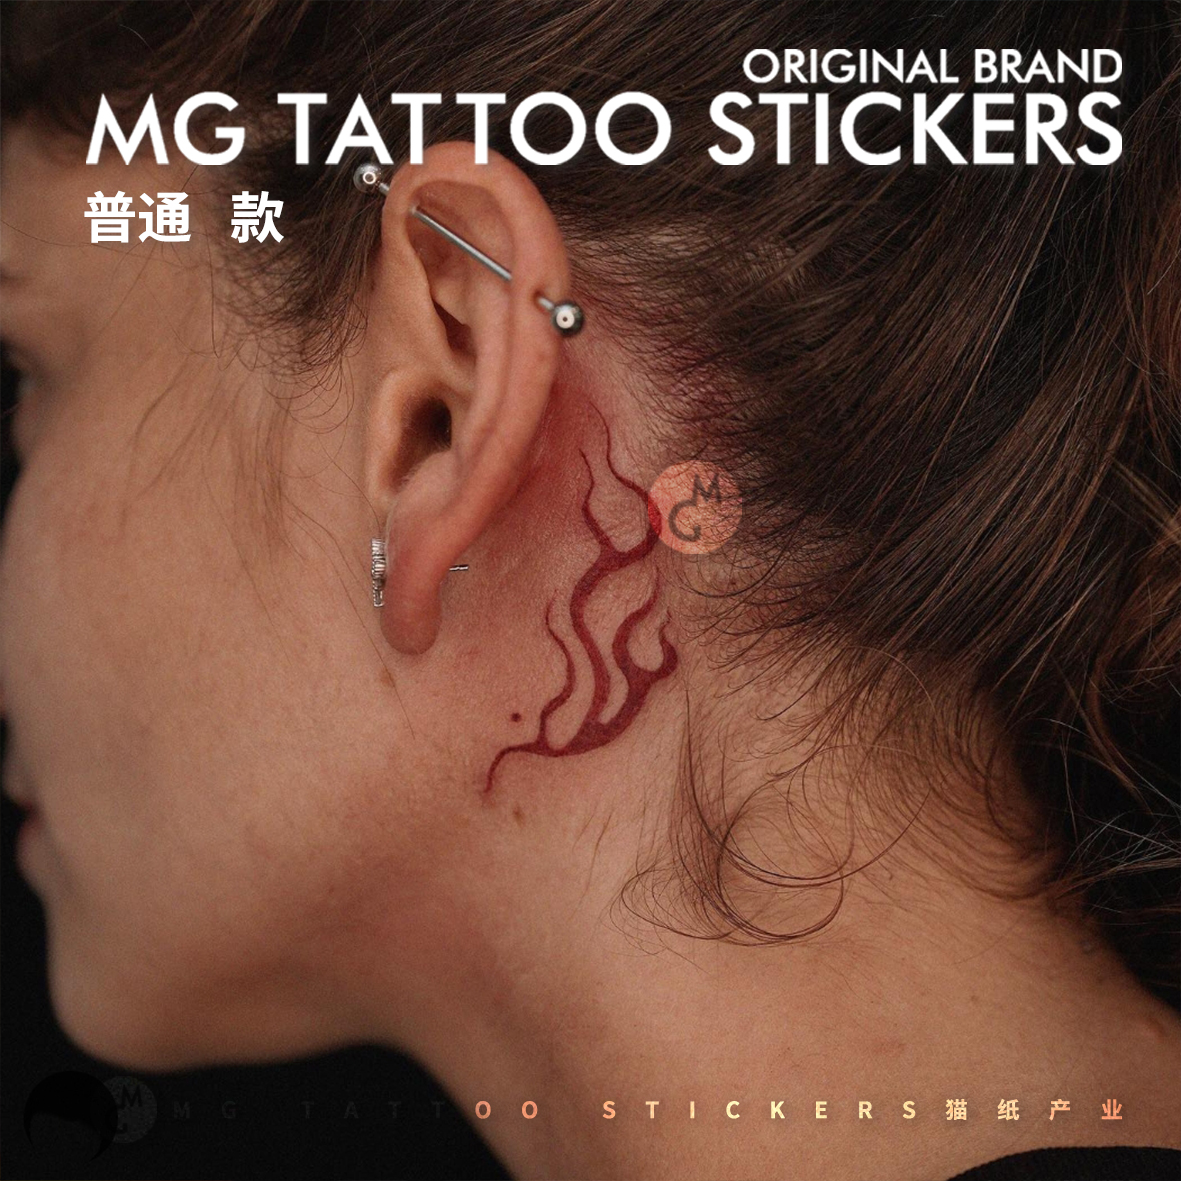 MG tattoo  重生 意境朱砂火焰凤凰羽翼唯美图案耳后脚踝纹身贴纸